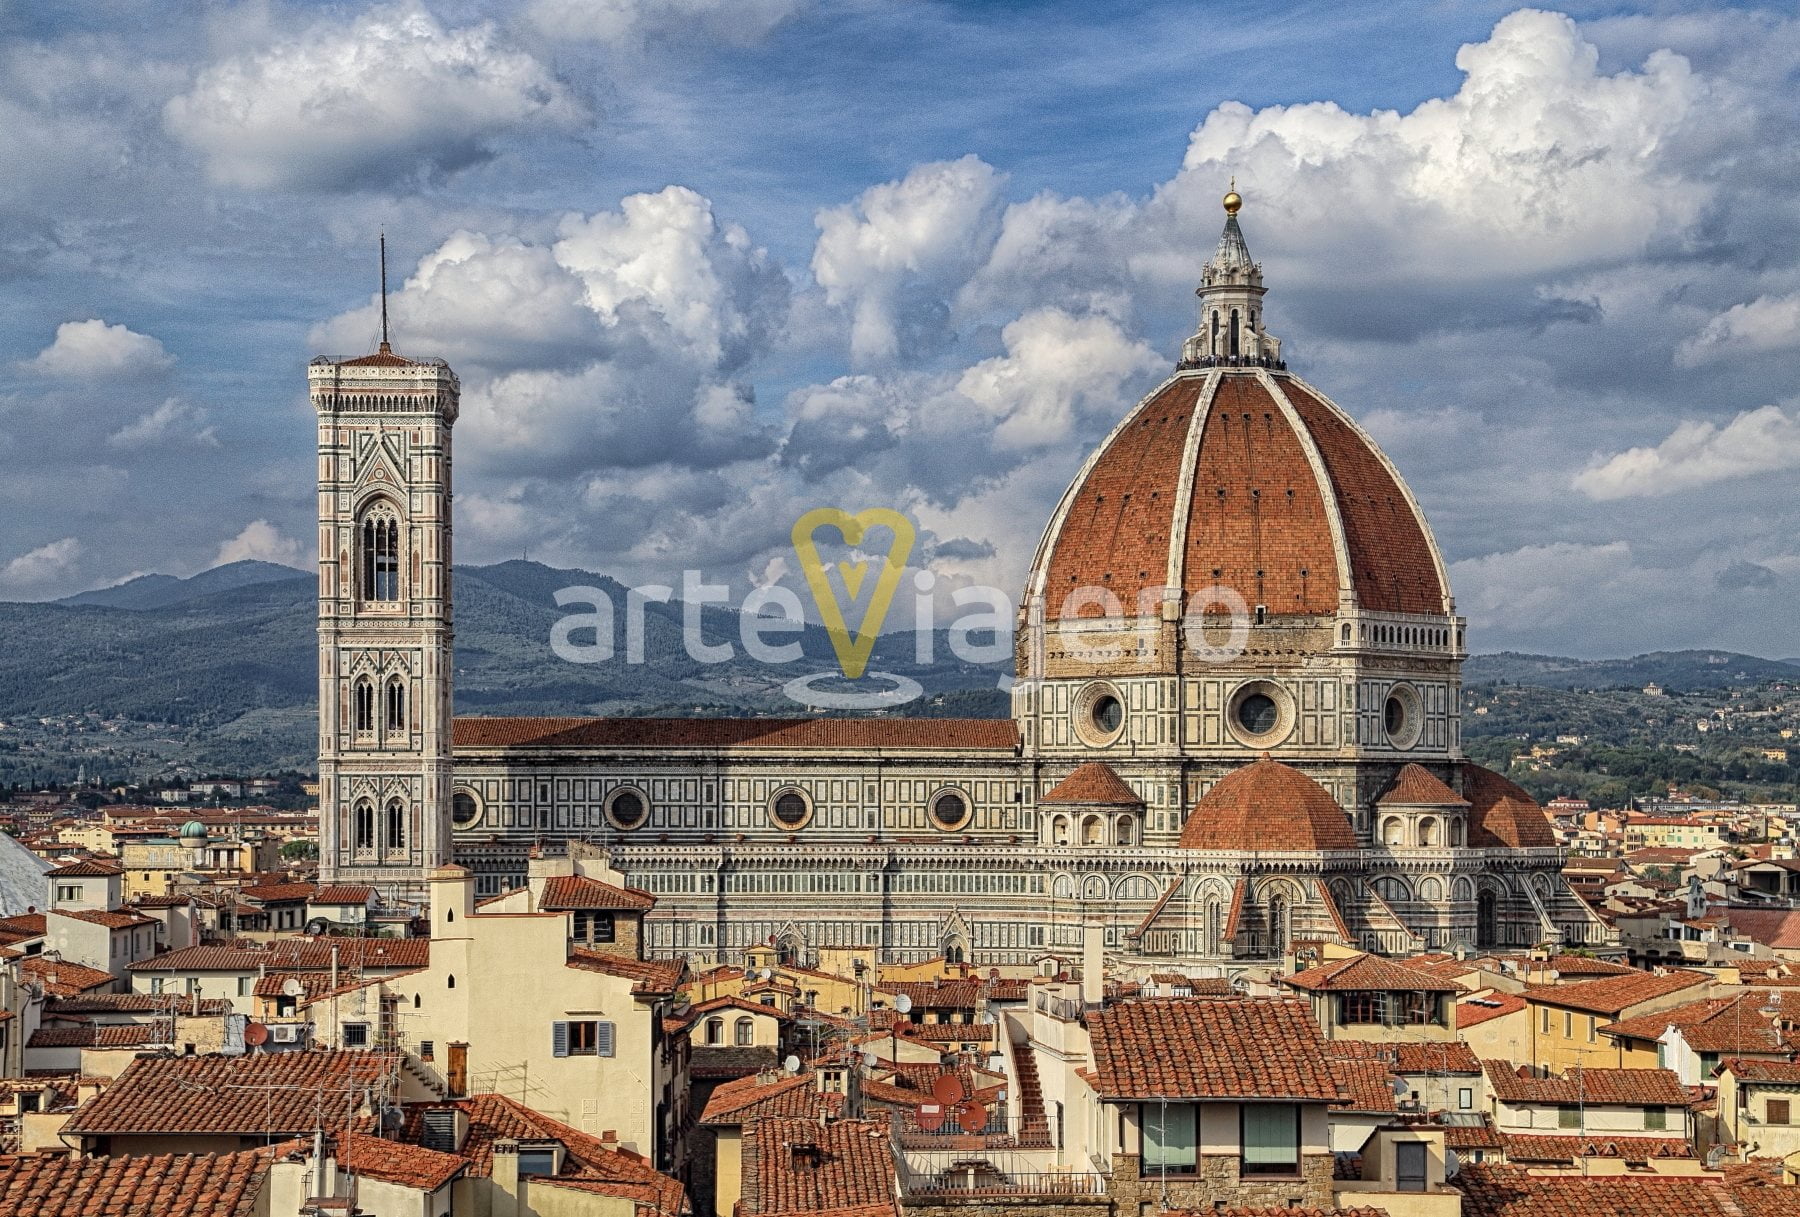 Cúpula del Duomo, Filippo Brunelleschi - ArteViajero